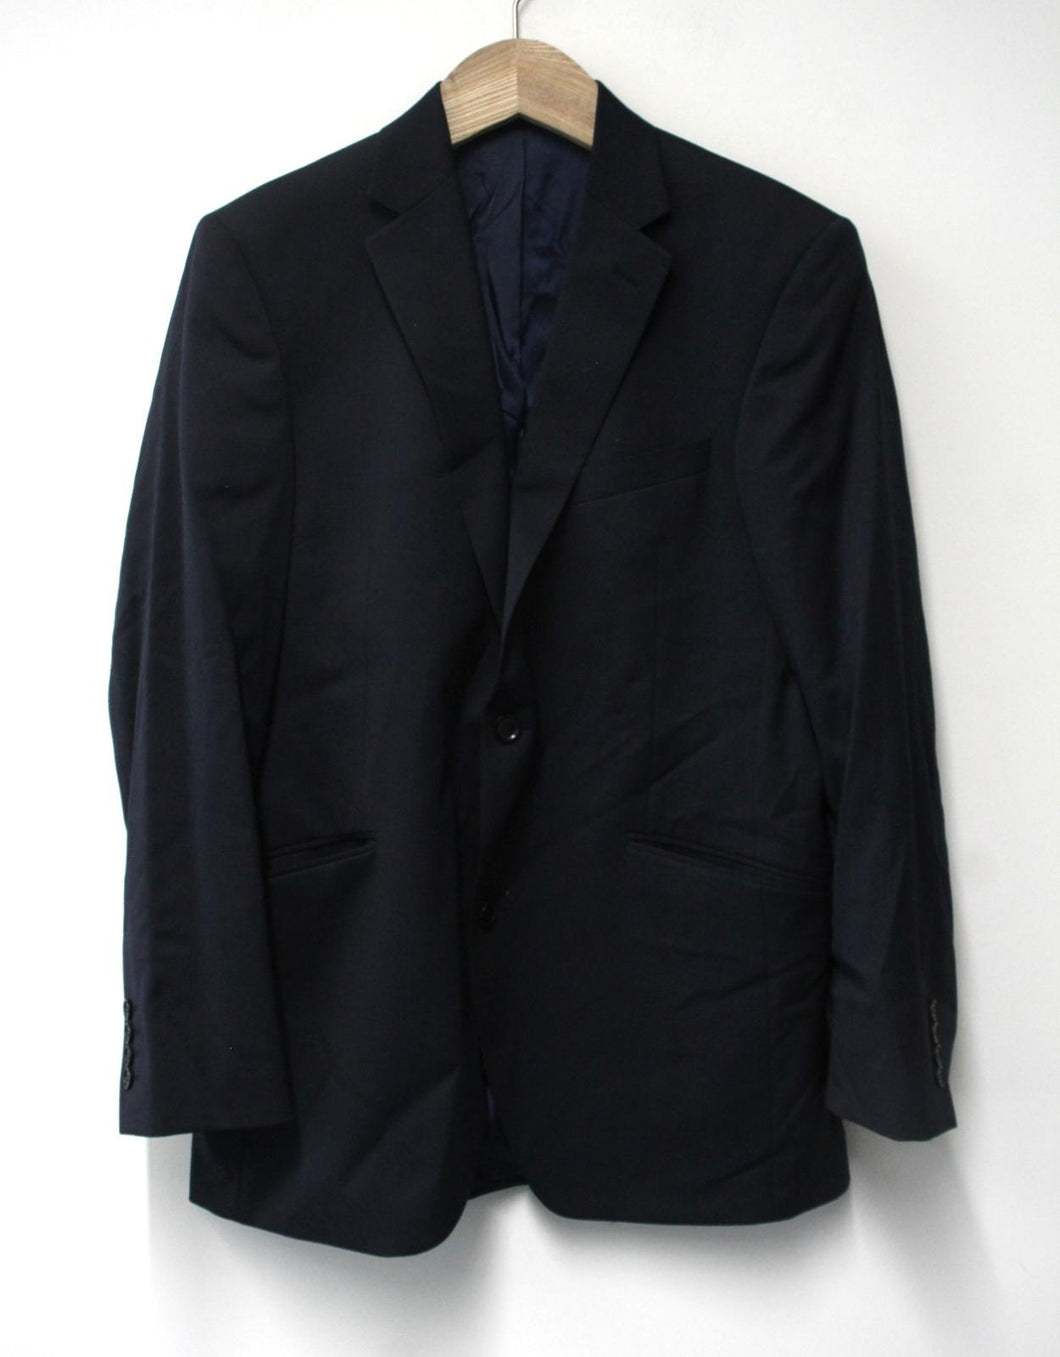 AUSTIN REED Men's Dark Navy Blue Wool Blend Single Breasted Suit Jacket UK42R